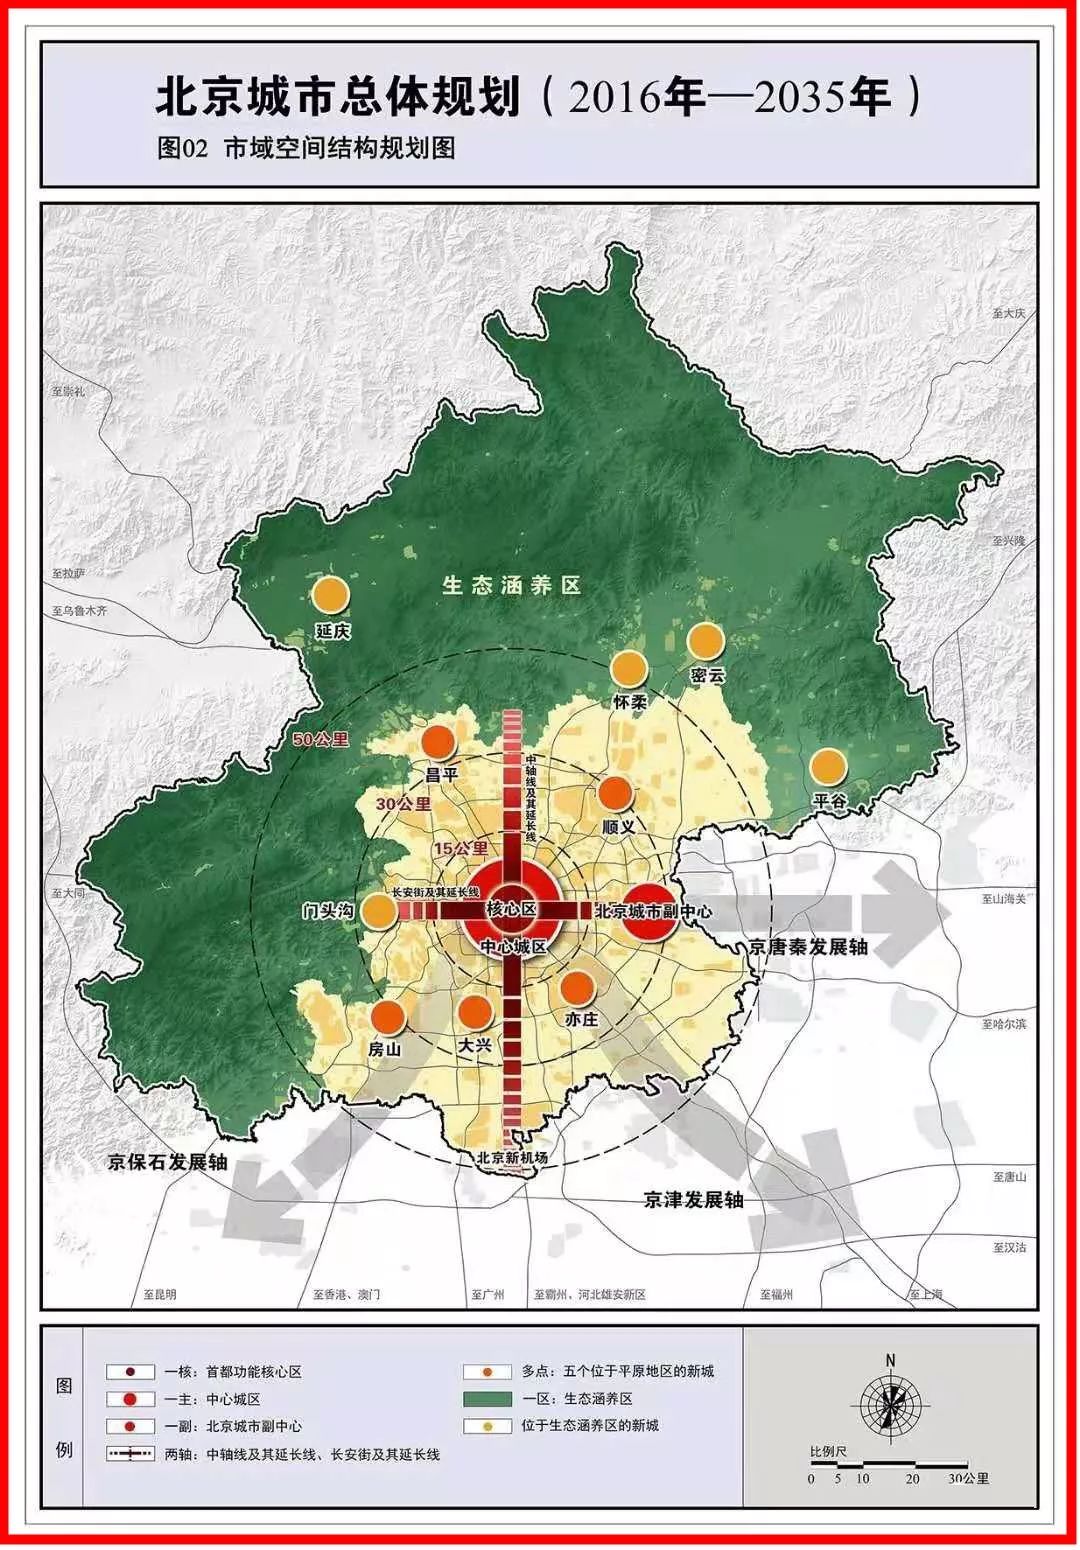 新版《北京城市总体规划图》发布,快看顺义的定位!